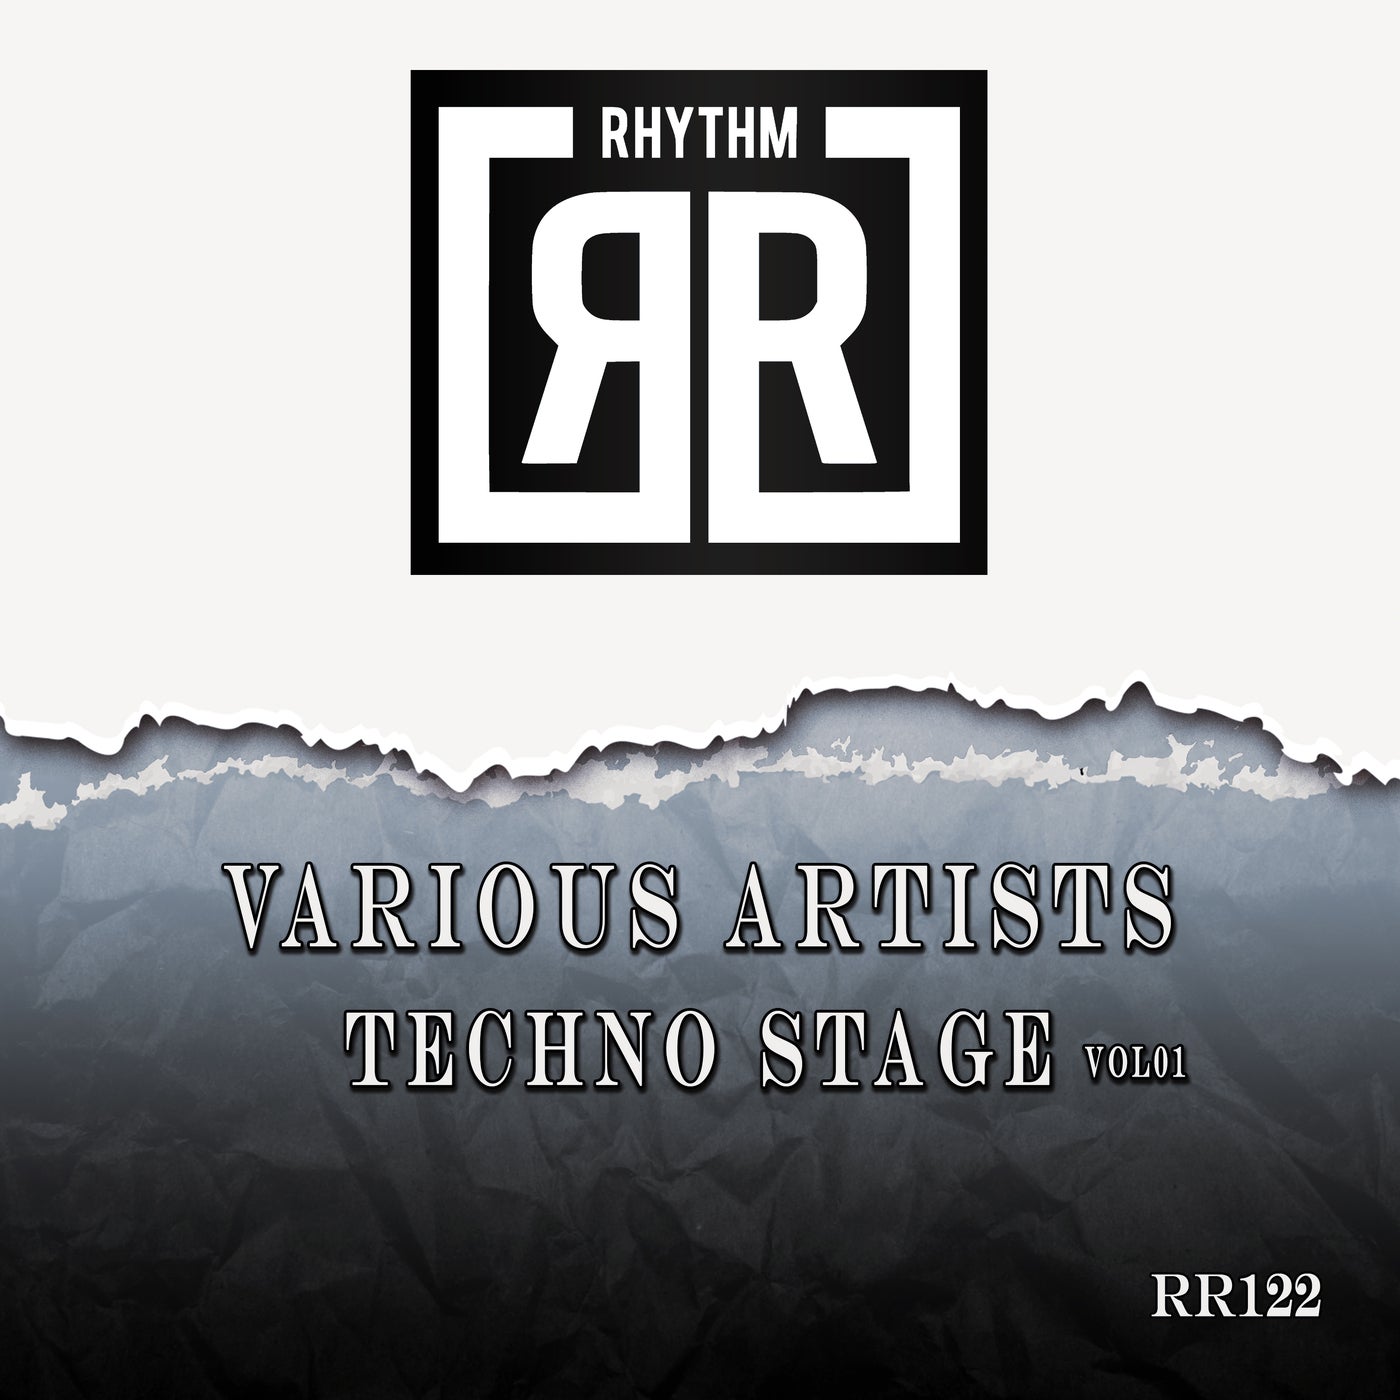 Techno Stage Vol01